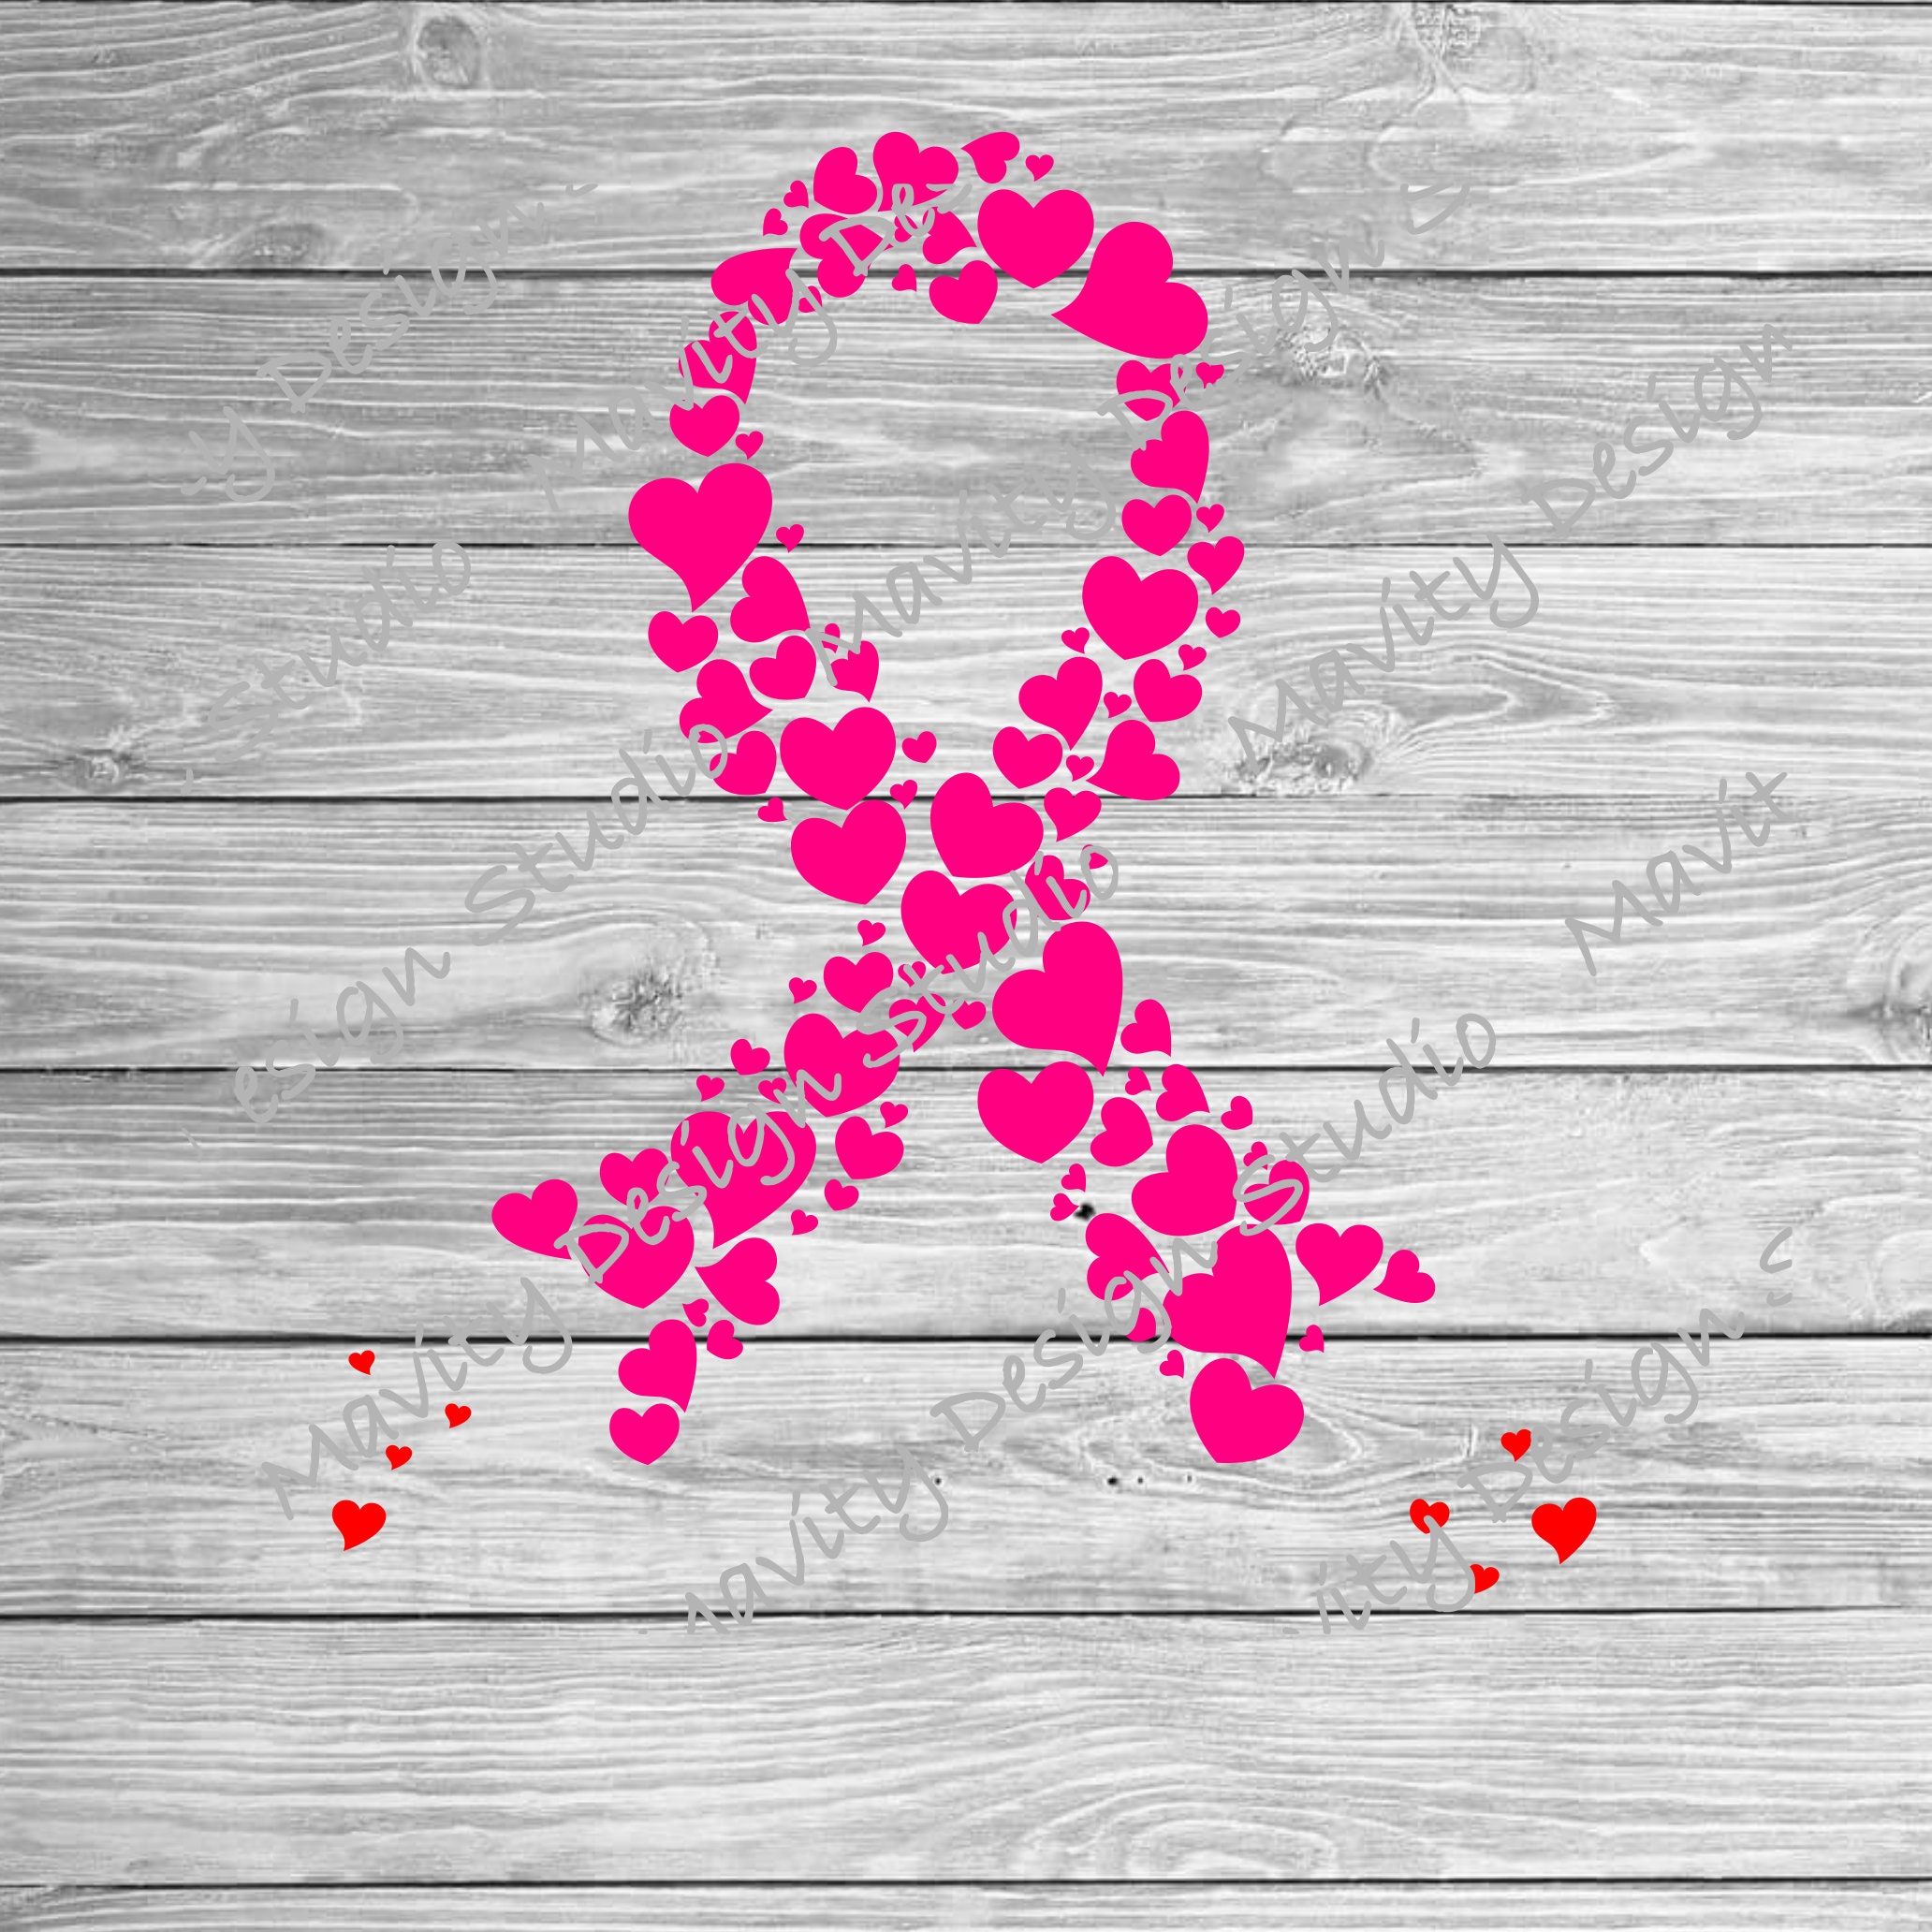 Pink Ribbon Heart Doodle Sublimation PNG Breast Cancer Awareness Printable  Artwork Digital File 